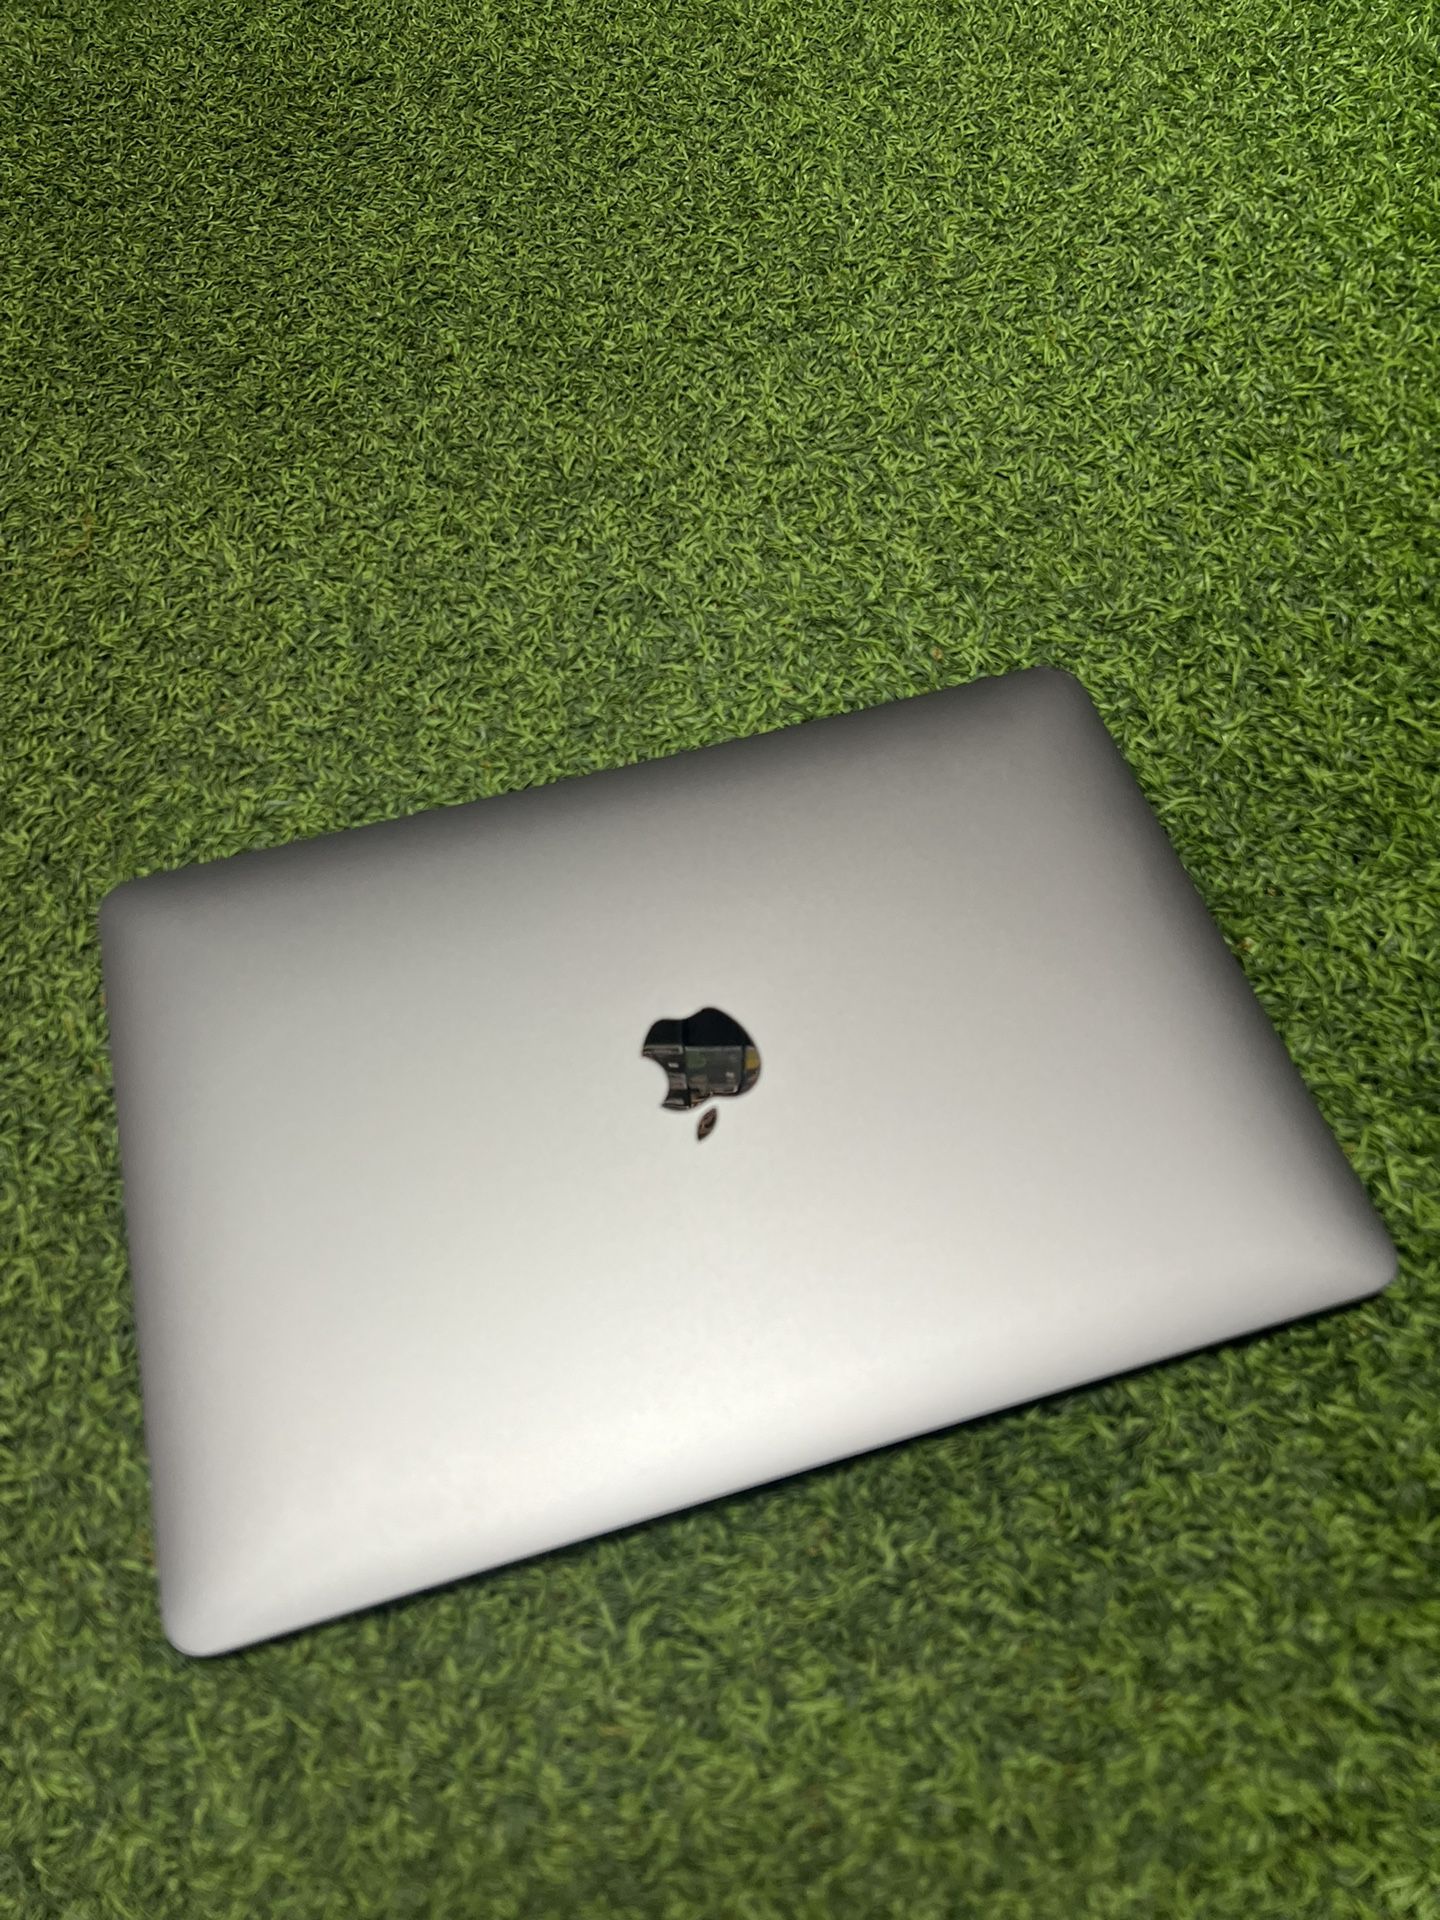 MacBook Air 13’ 2020